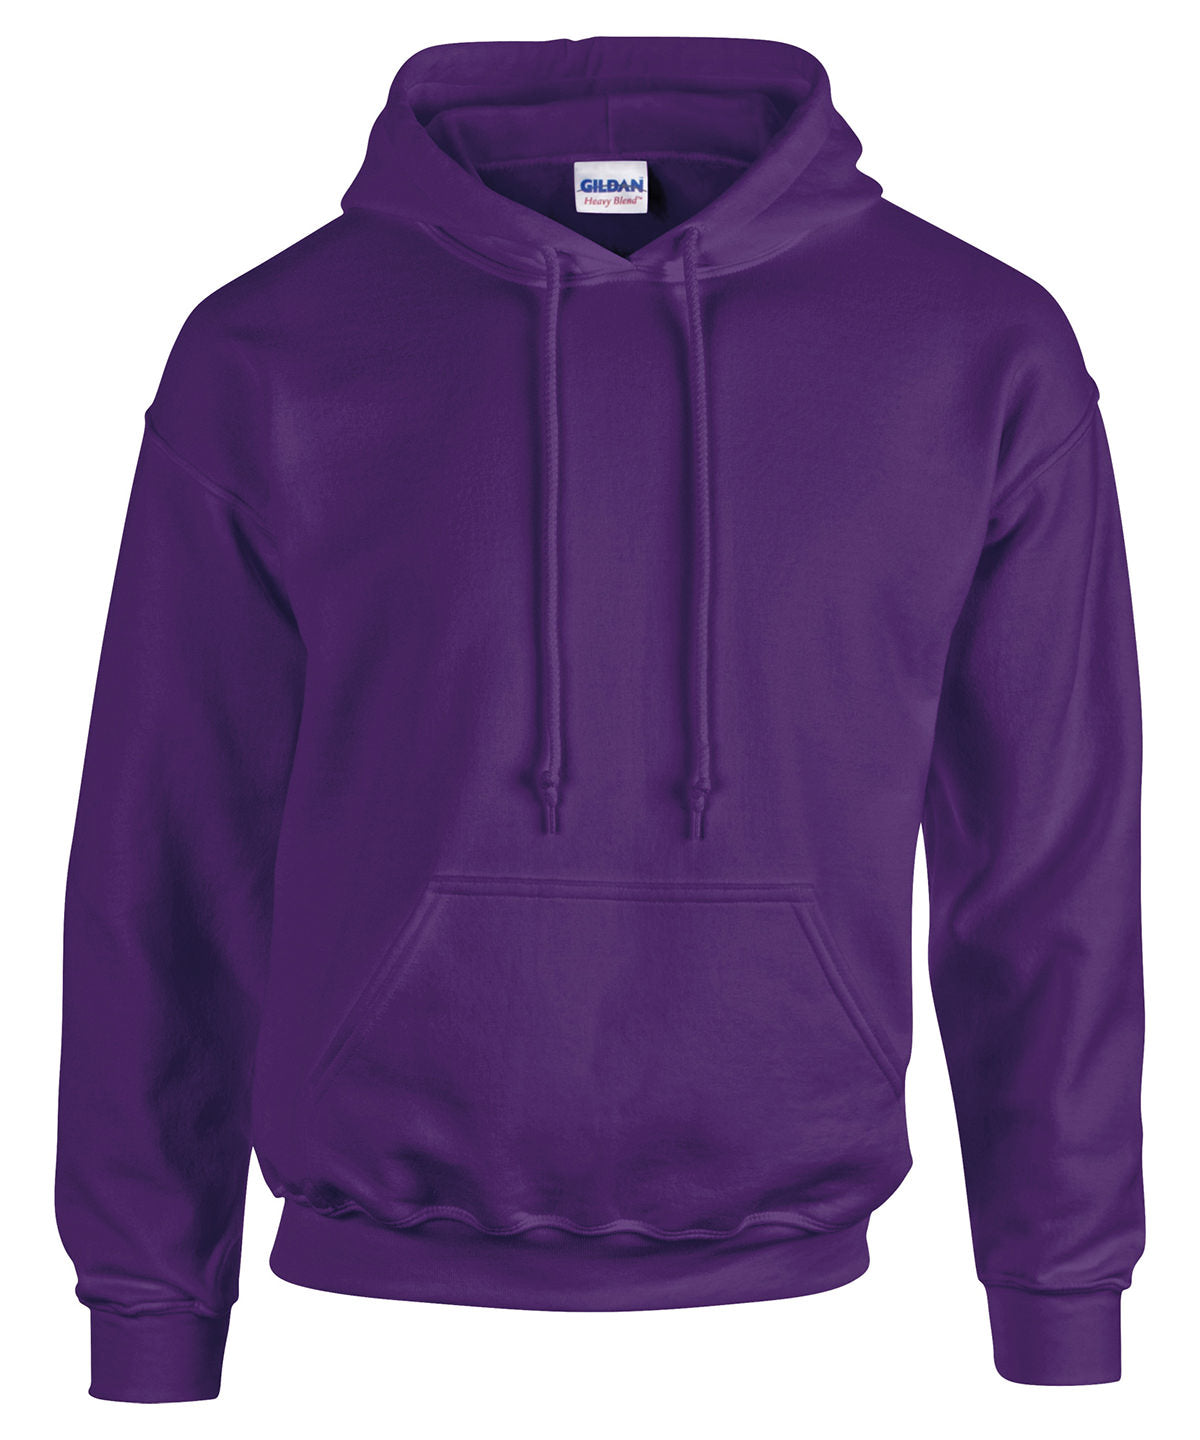 Personalised Hoodies - Black Gildan Heavy Blend™ hooded sweatshirt